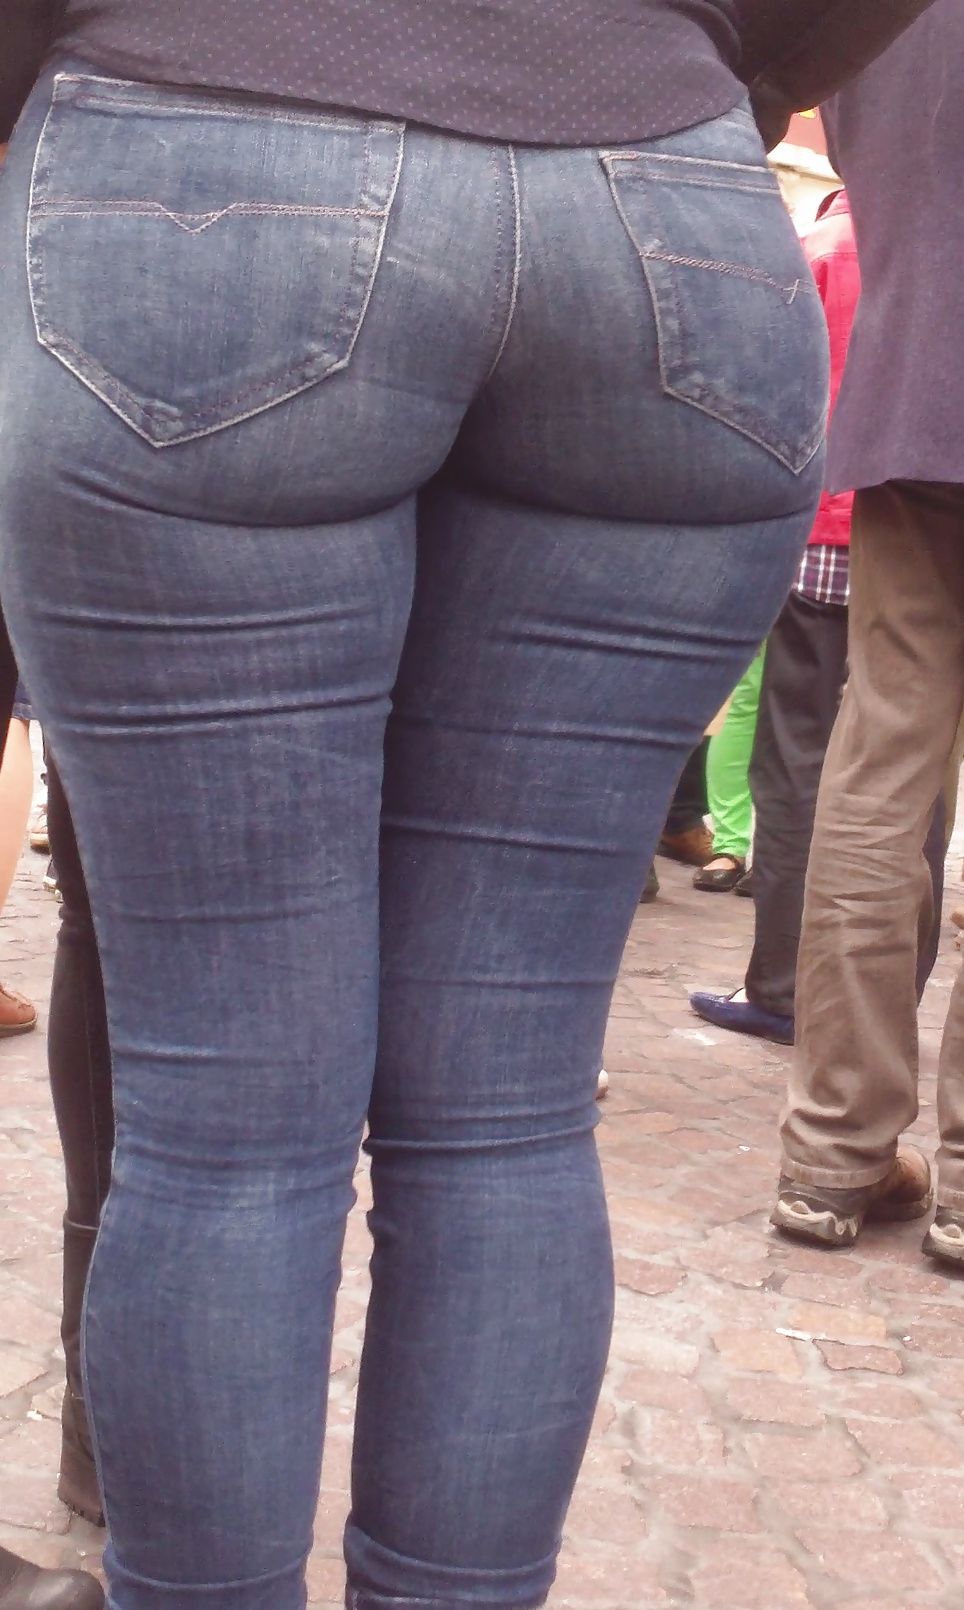 Milf ass tight jeans